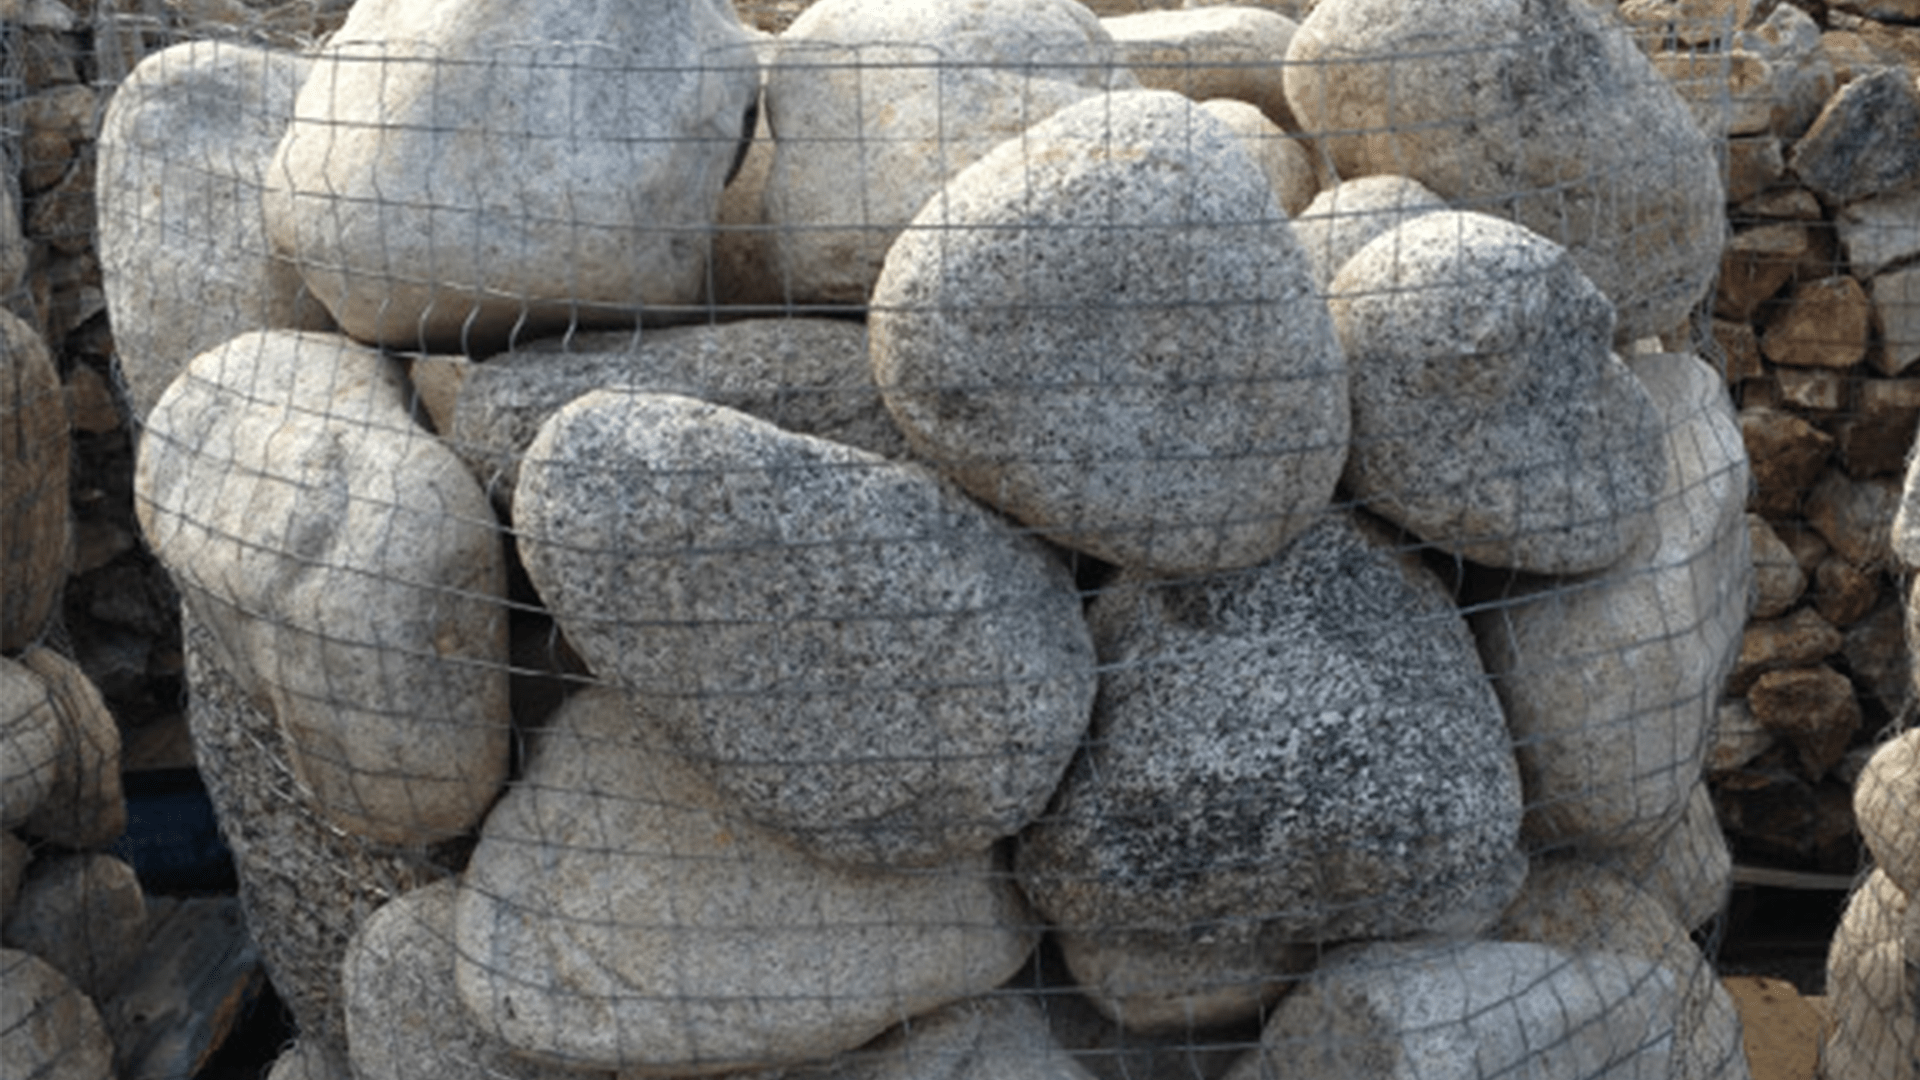 Granite Cobbles 12"-18" - Cobbles & Boulders